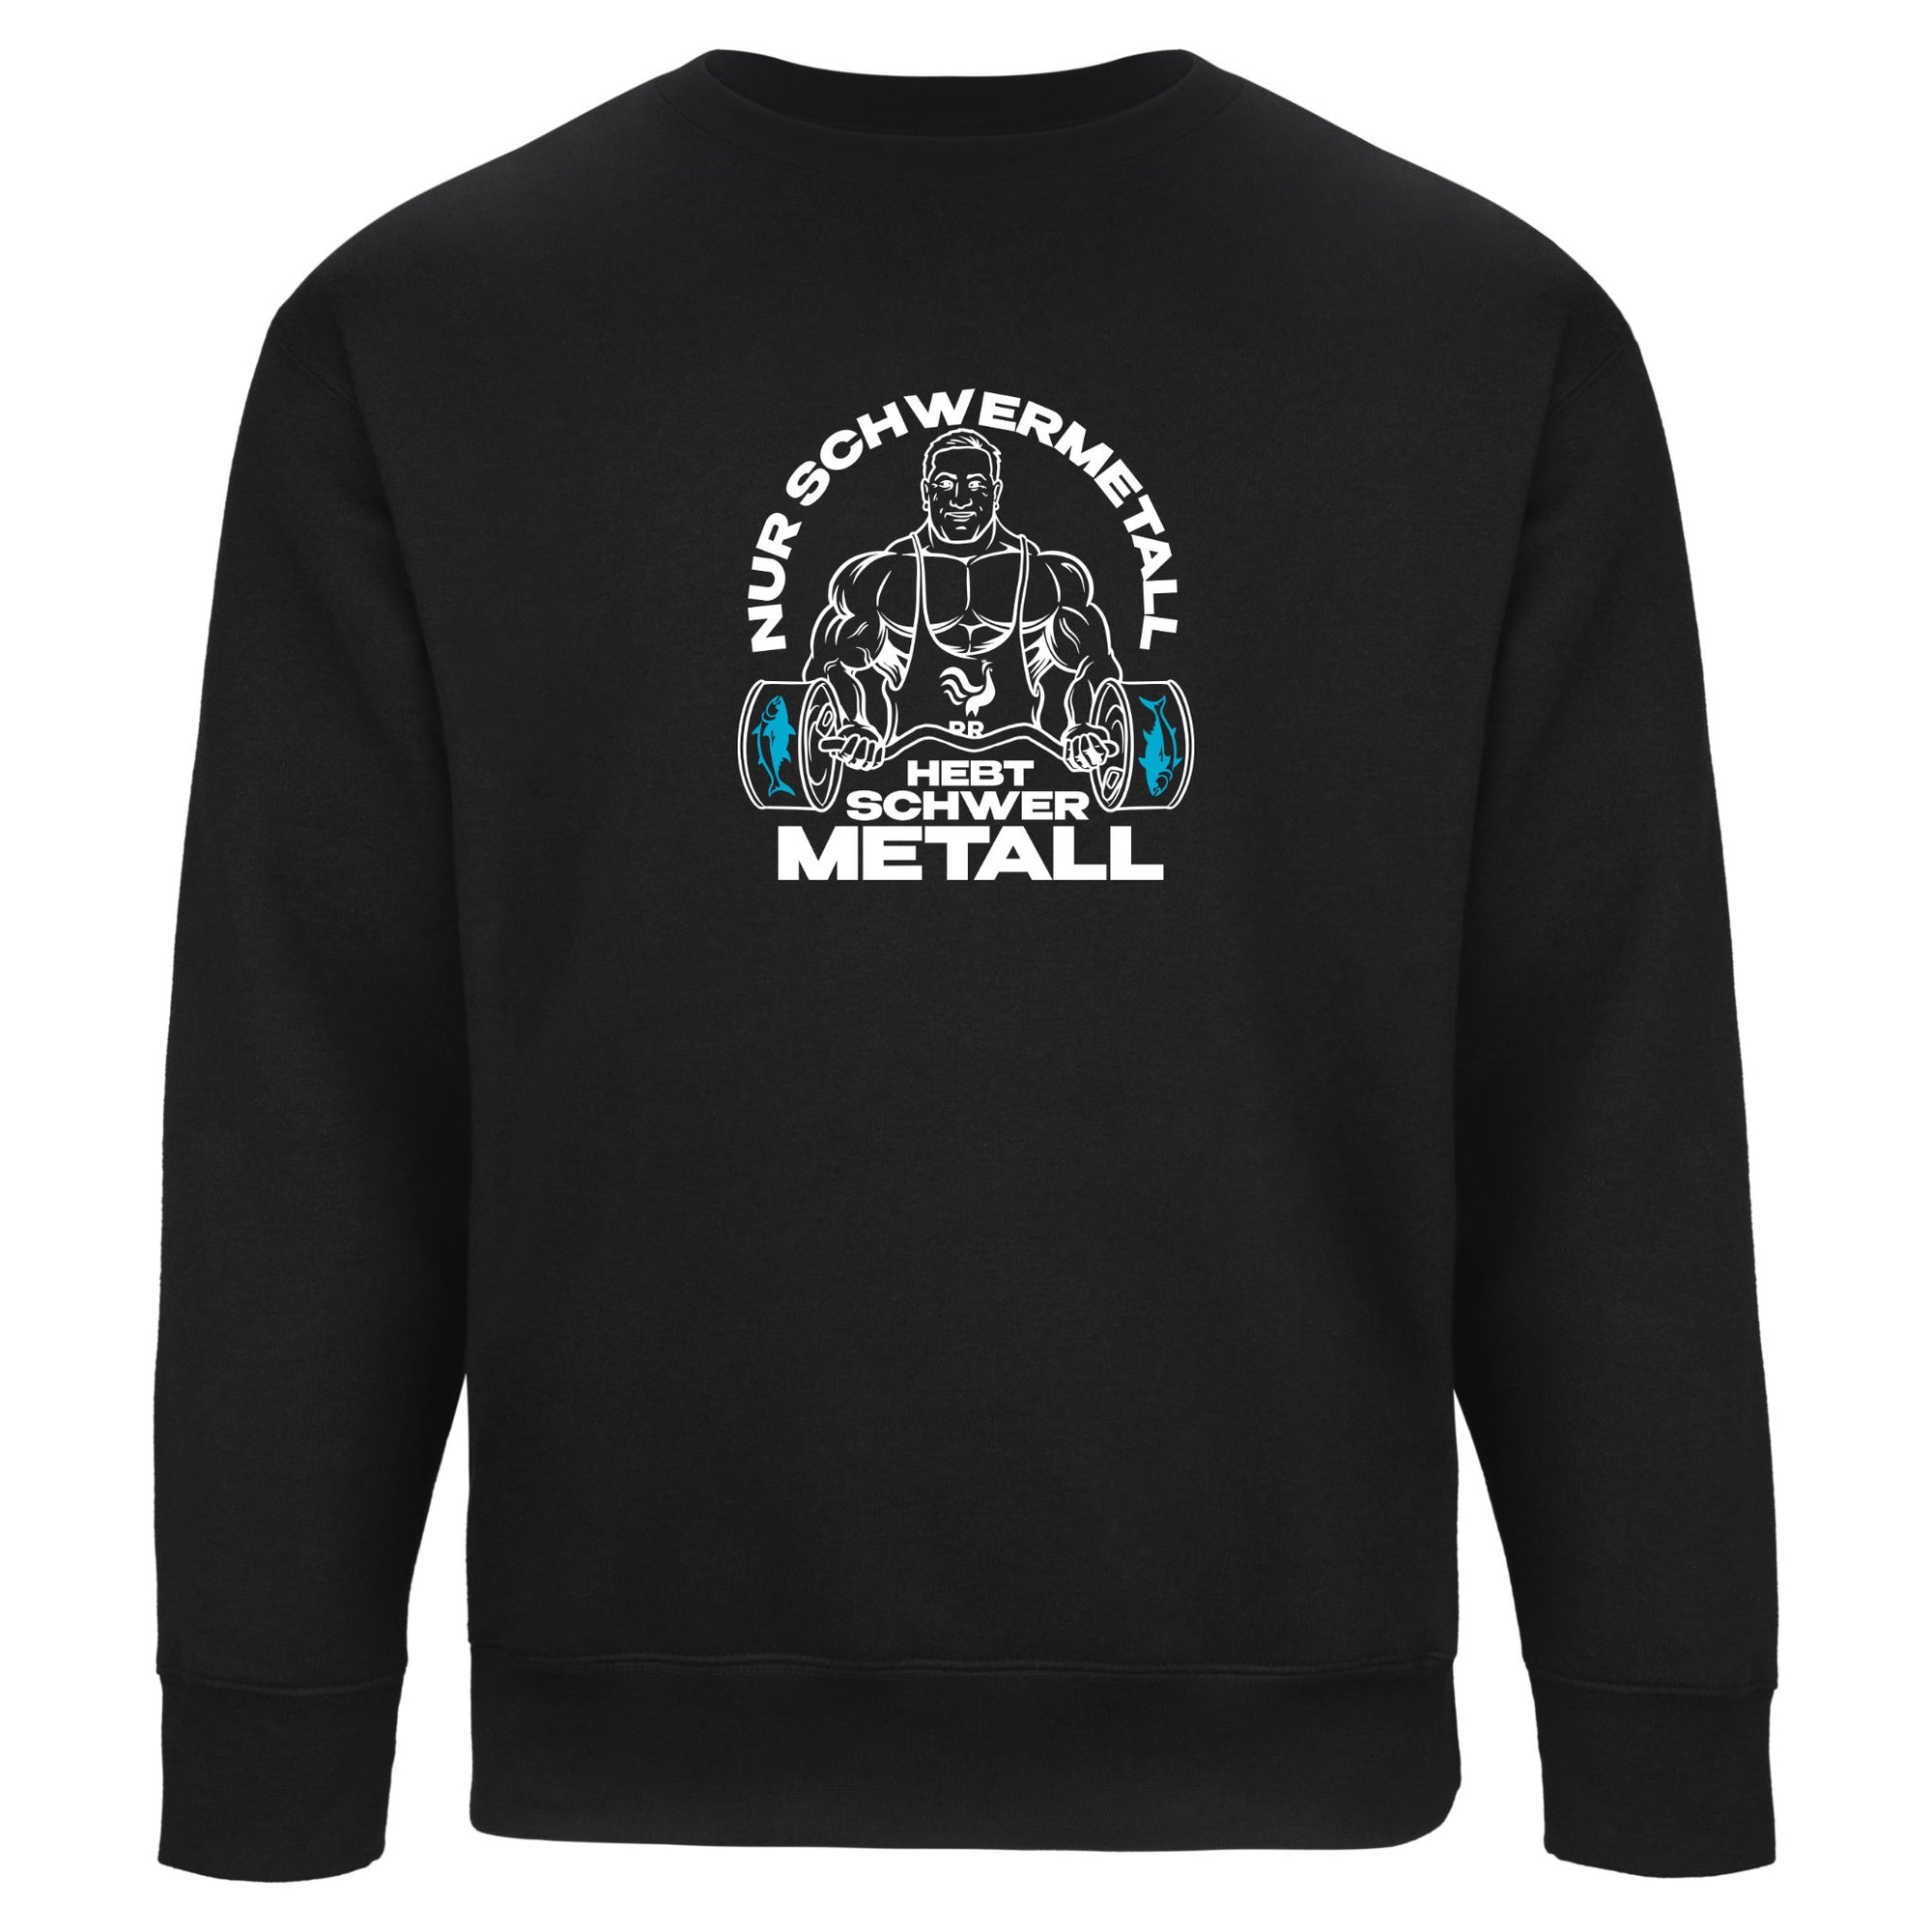 Sweater | Nur Schwermetall hebt schwer Metall